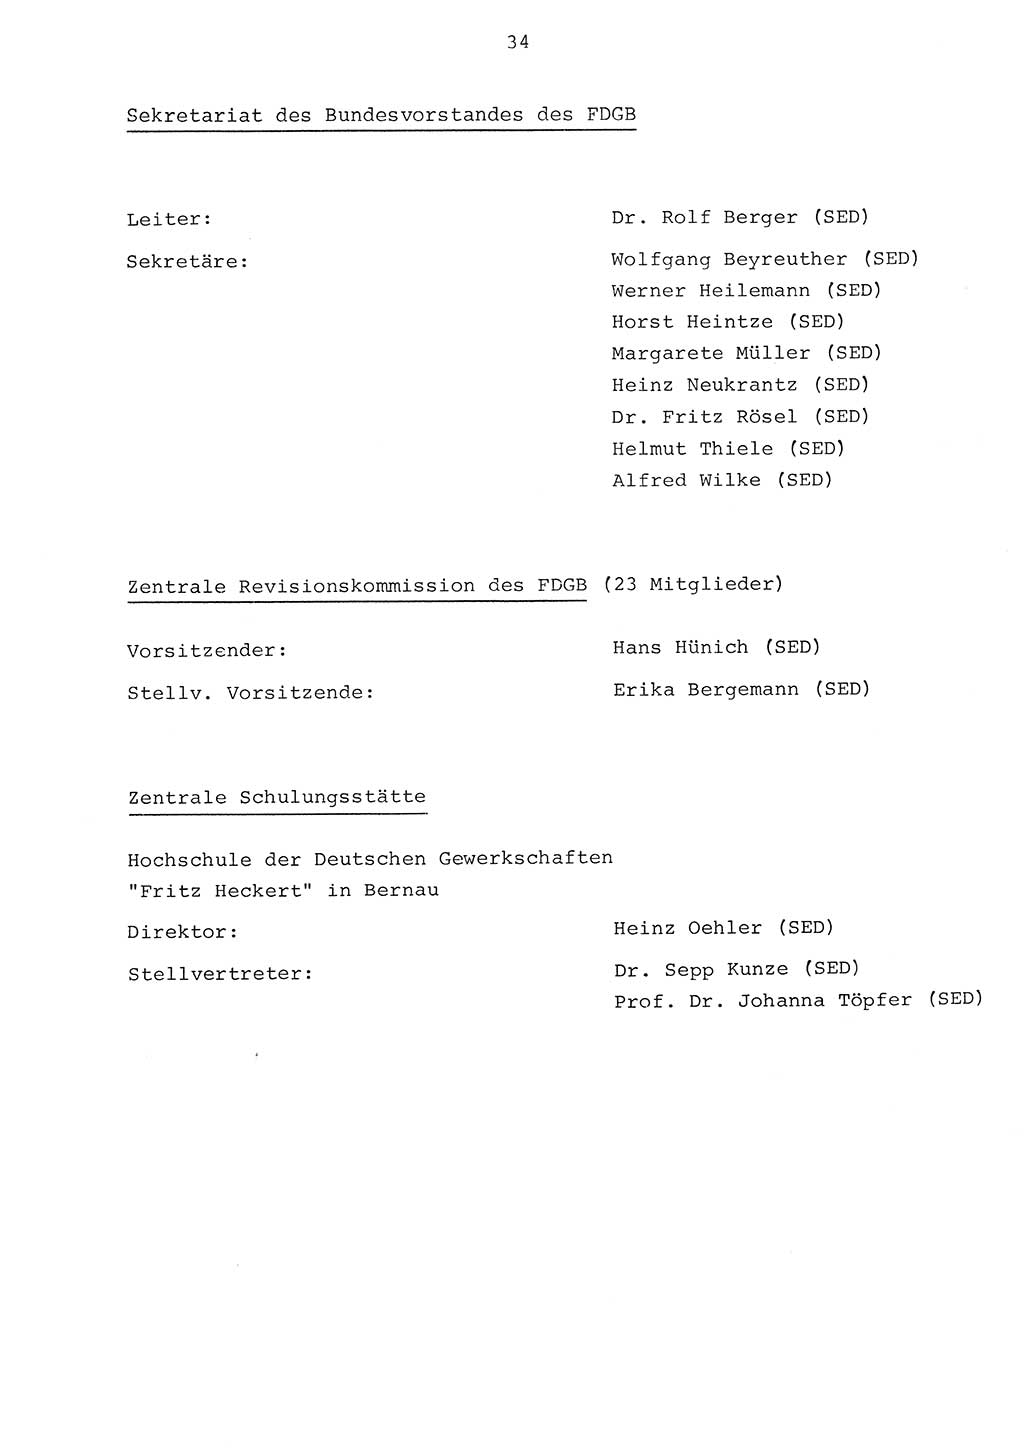 Parteiapparat der Deutschen Demokratischen Republik (DDR) 1970, Seite 34 (Parteiapp. DDR 1970, S. 34)